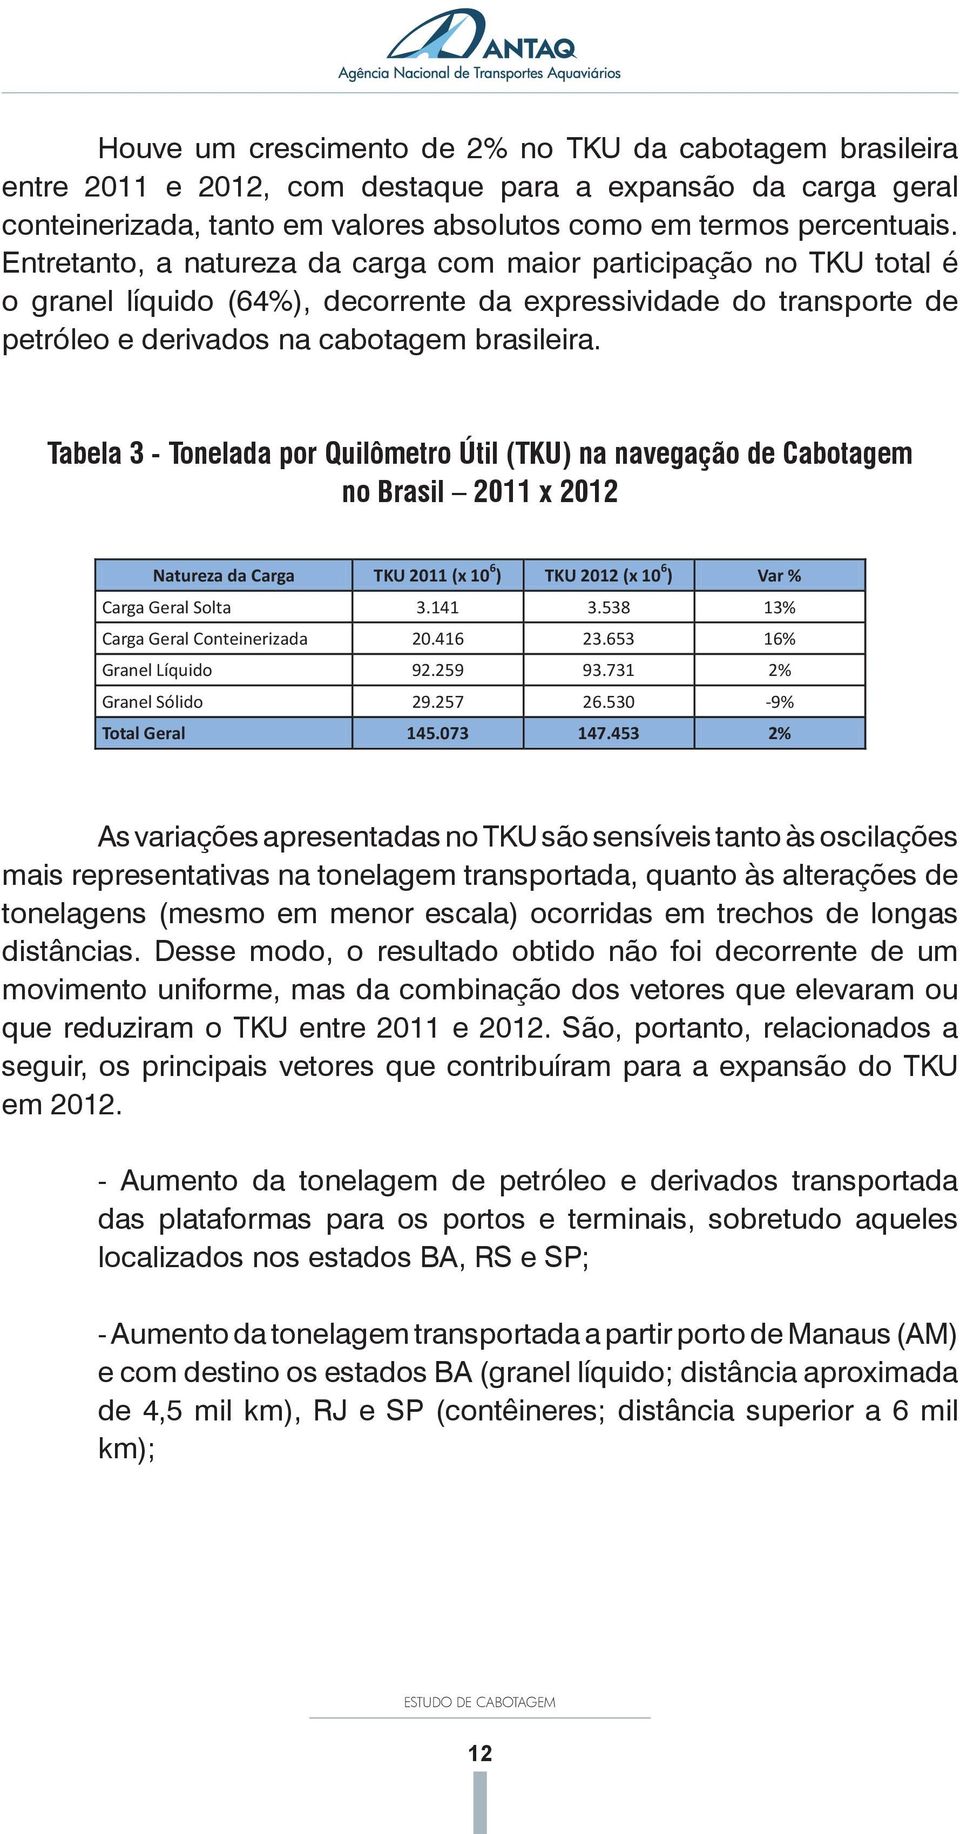 923 1,4 Houve um crescimento de 2% no TKU da cabotagem brasileira entre 2011 e 2012, com destaque para a expansão da carga geral conteinerizada, tanto em valores absolutos como em termos percentuais.